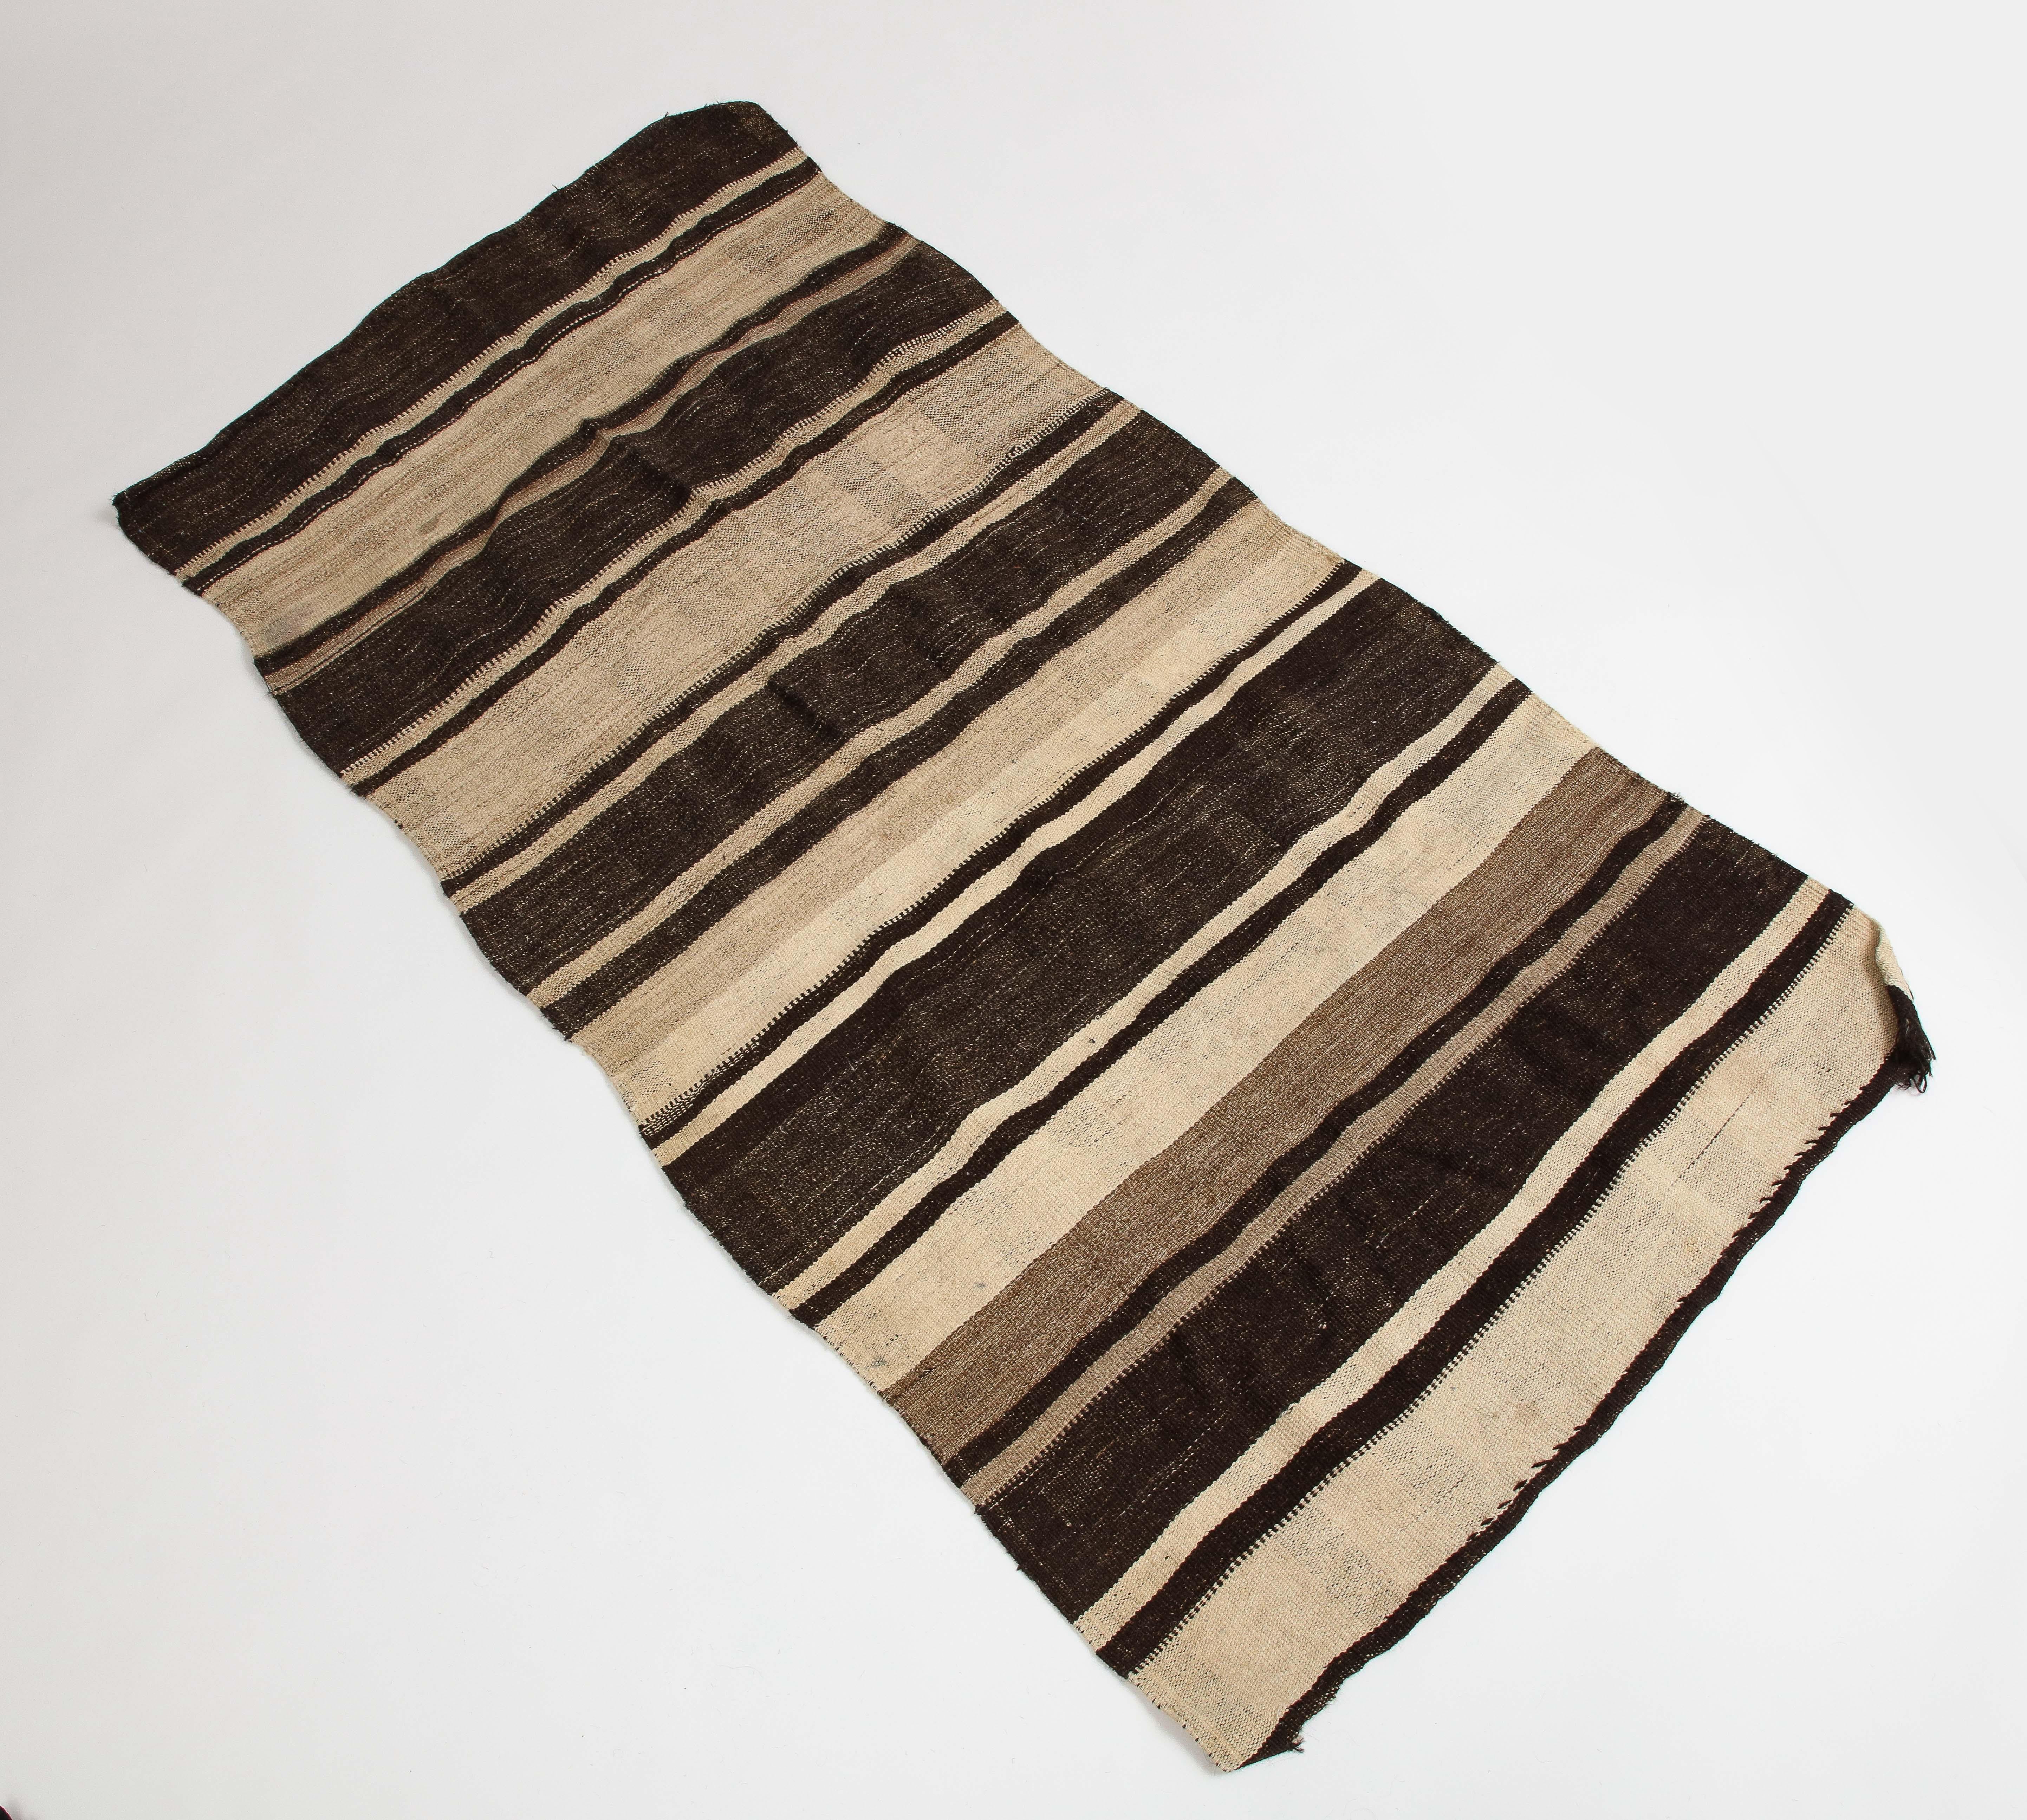 Vintage Turkish kilim brown striped wool rug.